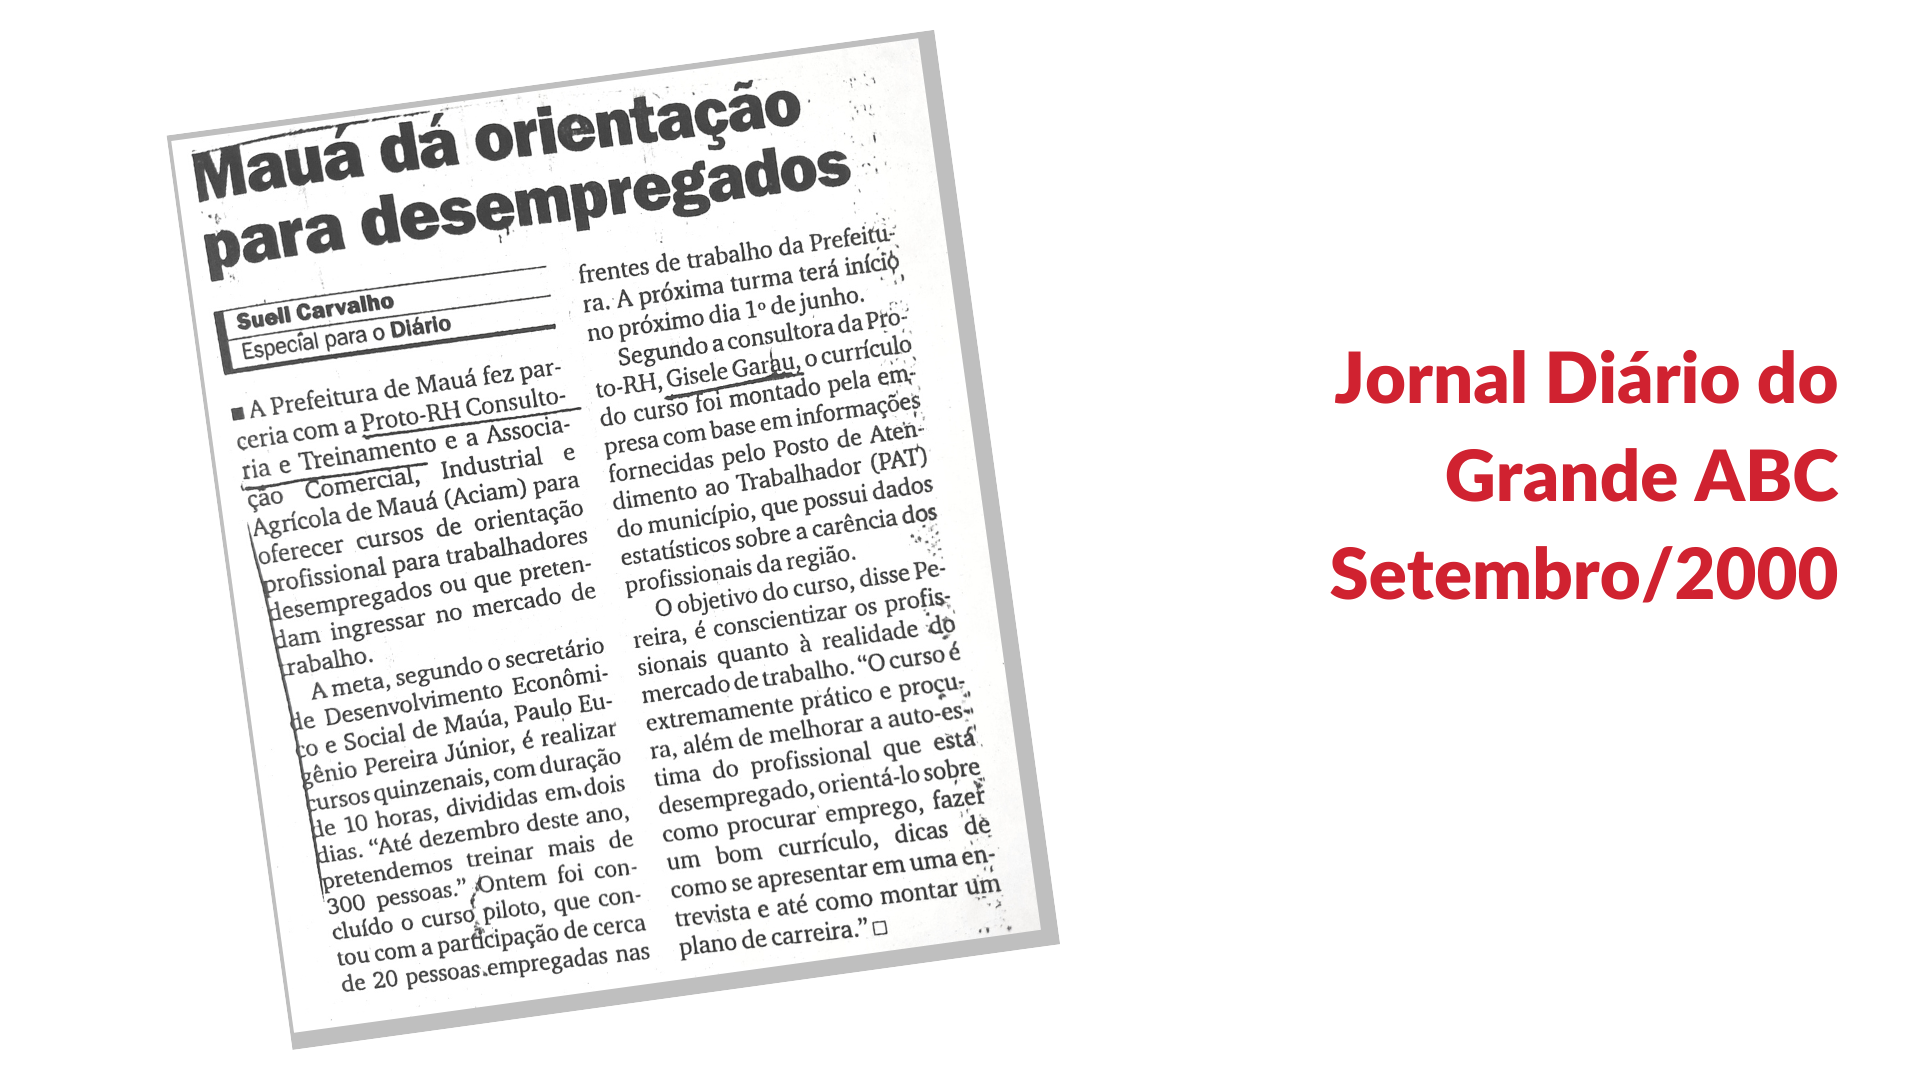 Giselle Garau Jornal Diario do Grande ABC